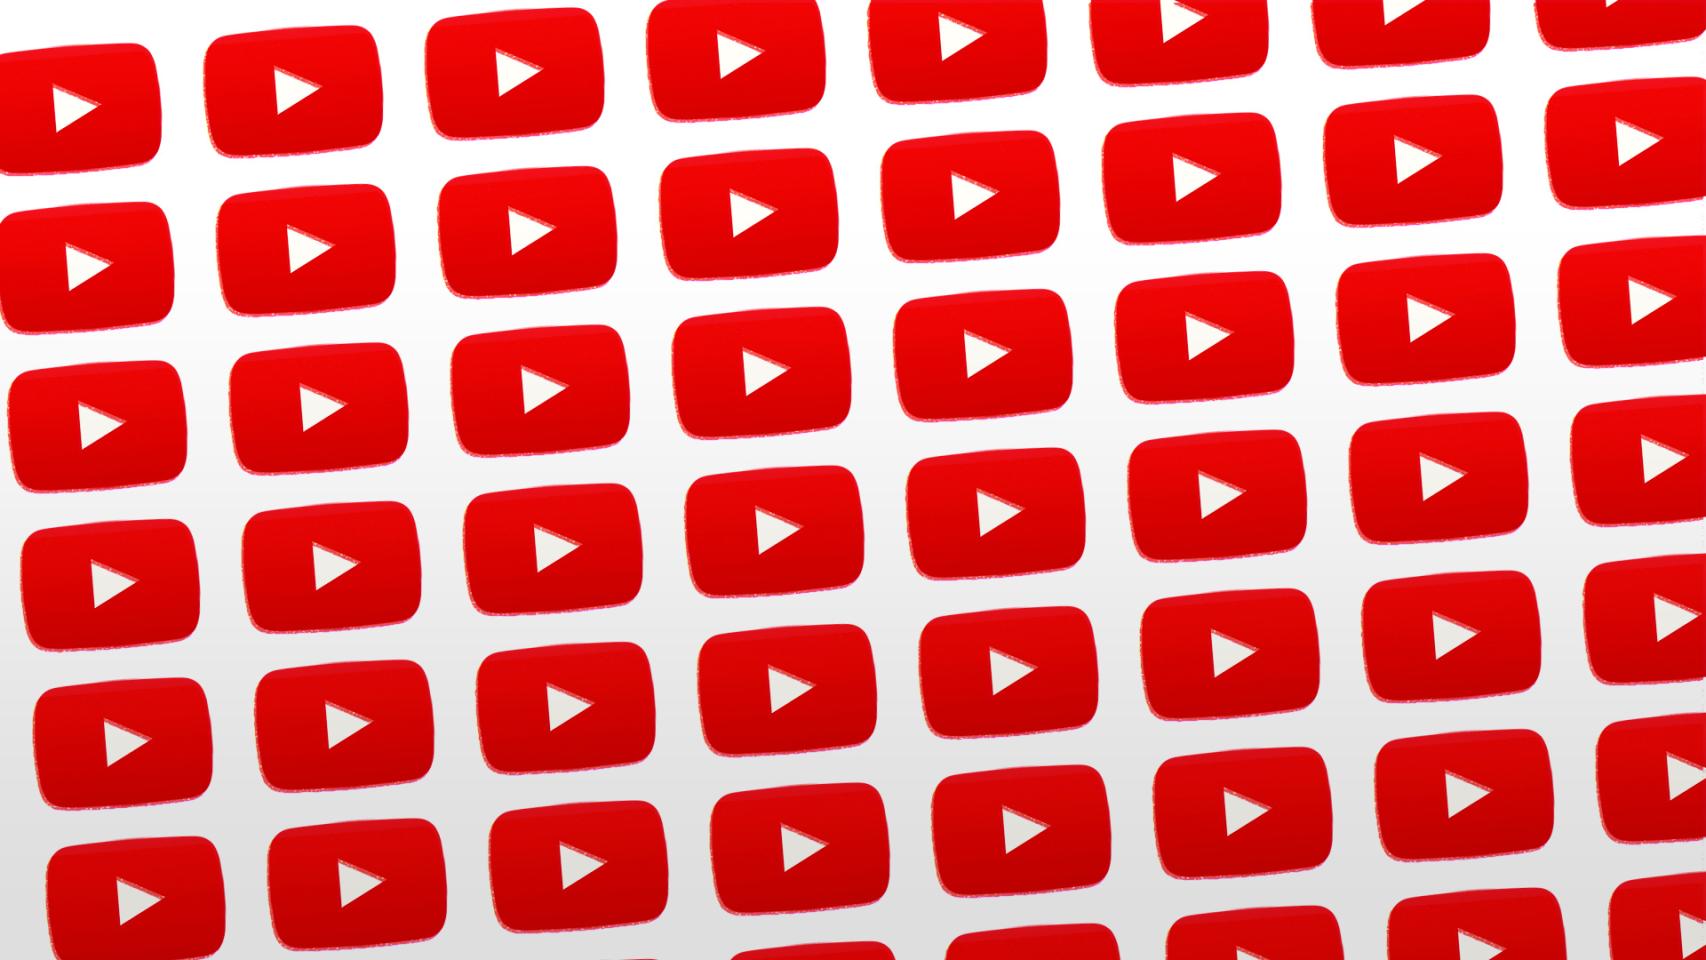 #YouTubeRewind, lo más visto en YouTube de 2015